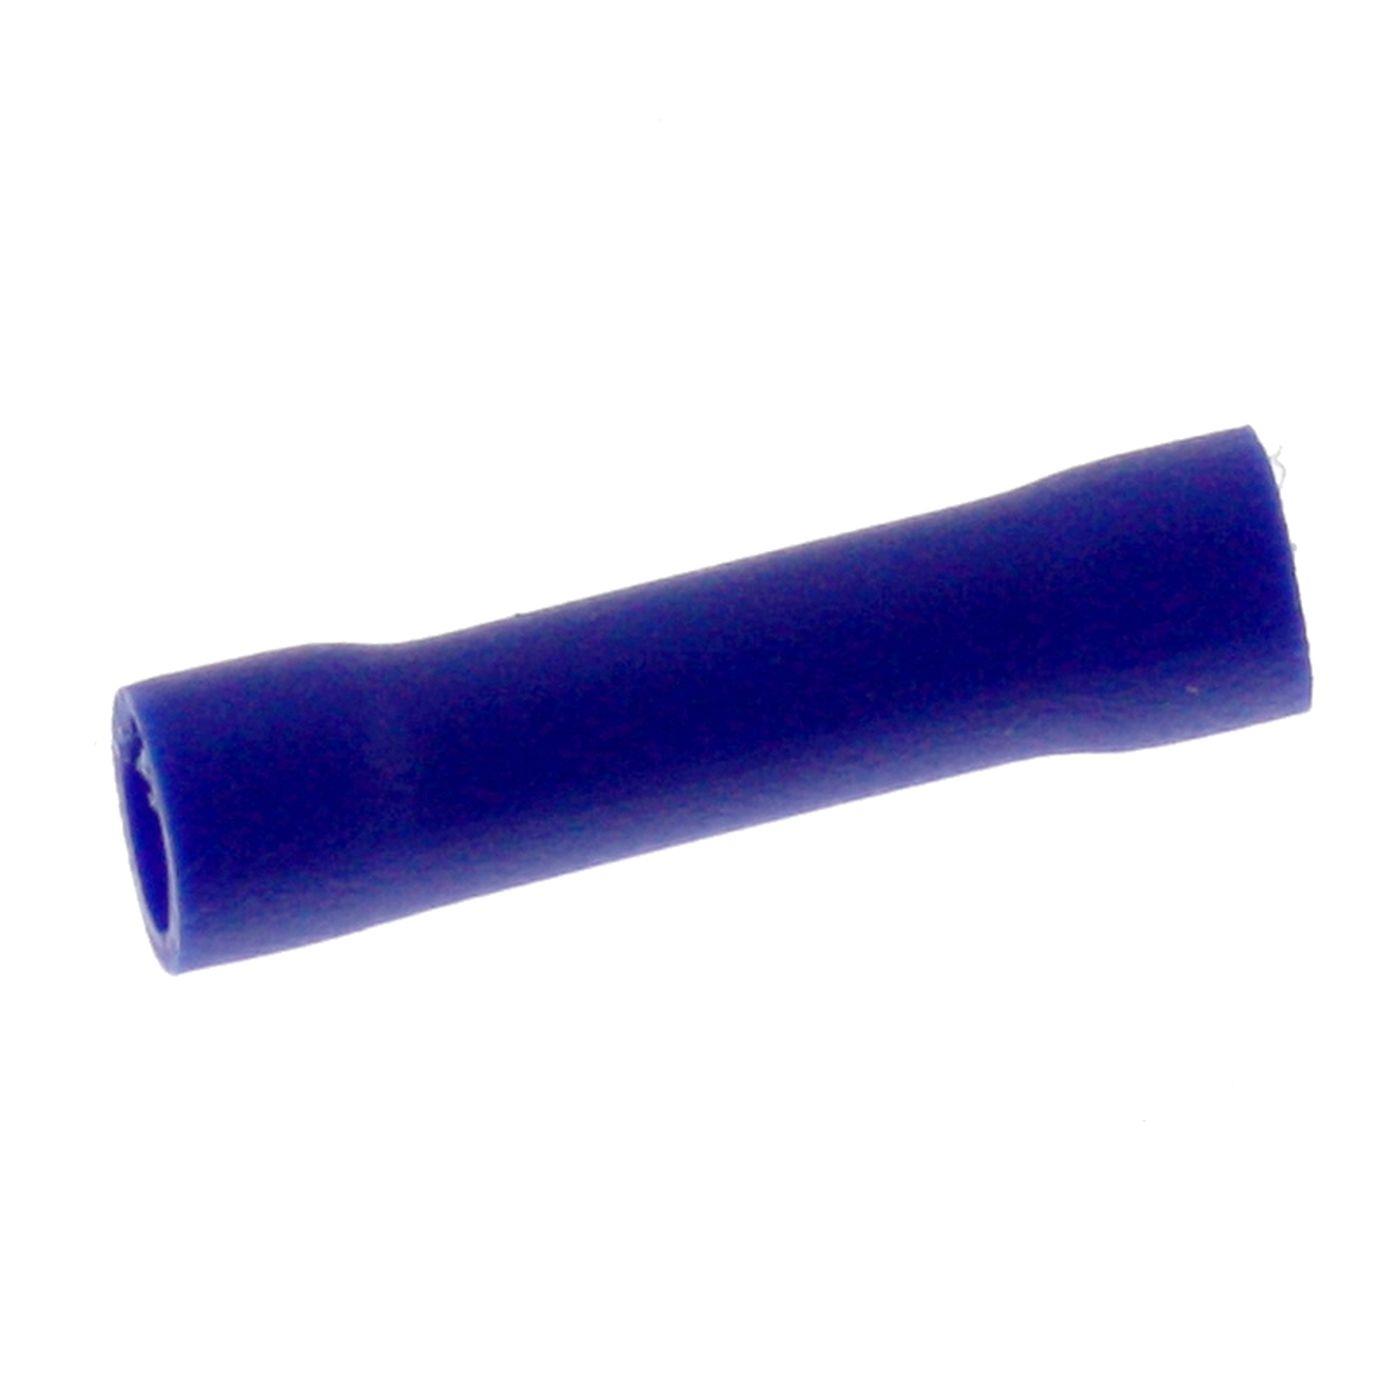 25x Stoßverbinder vollisoliert 1,5-2,5mm² Blau Quetschverbinder Kupfer verzinnt